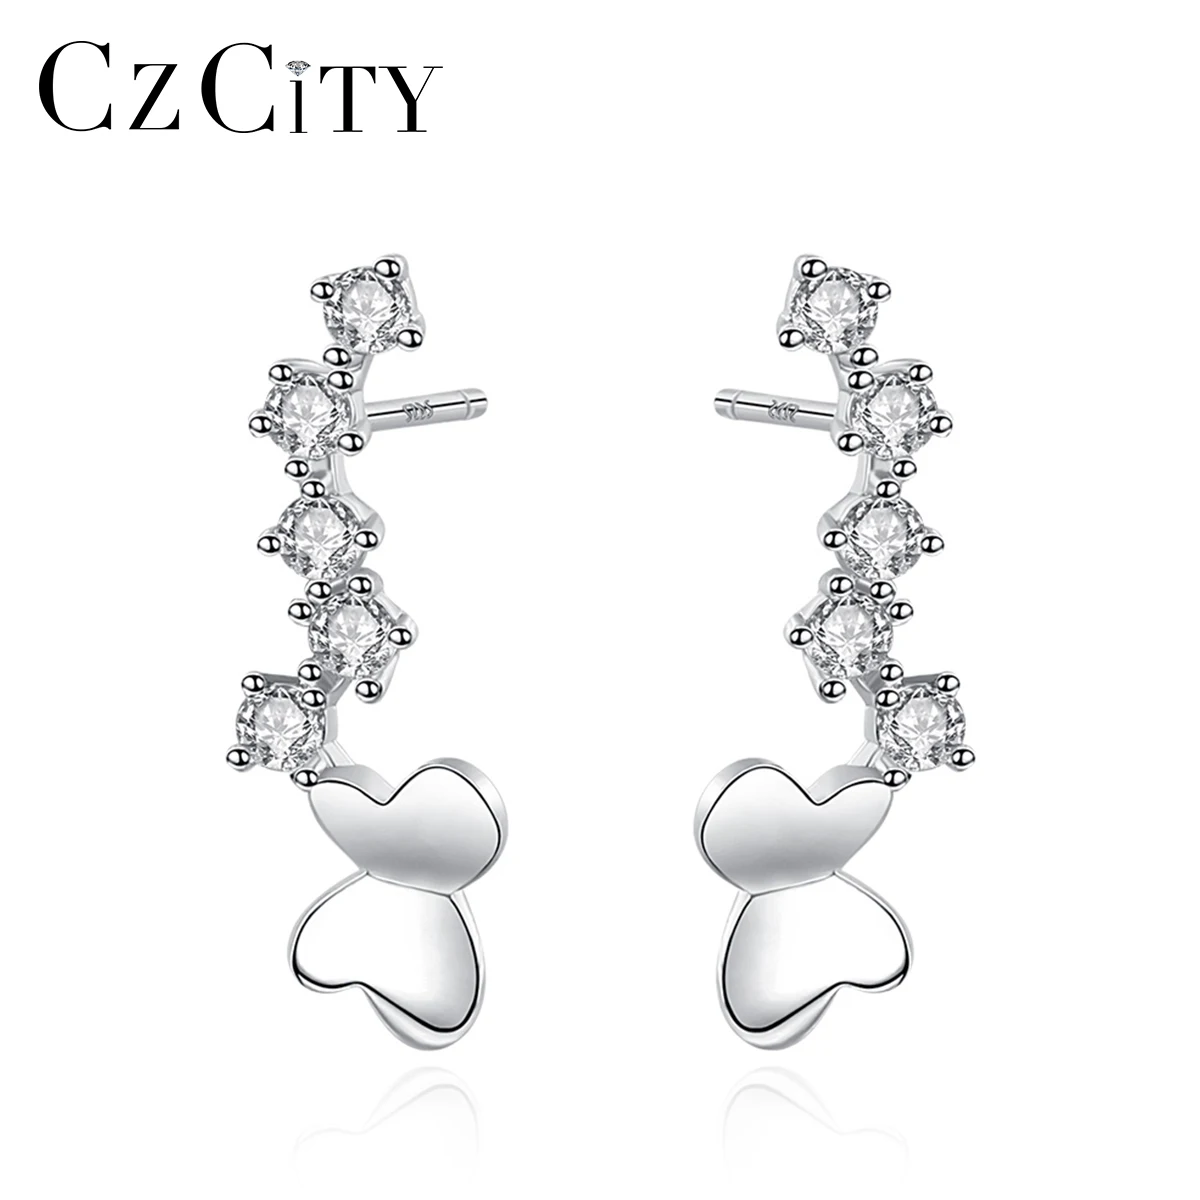 

CZCITY Fashion Korean Butterfly Stud Earrings for Women Romantic Design Girls Small Zircon Earrings Brand Silver 925 Jewellery